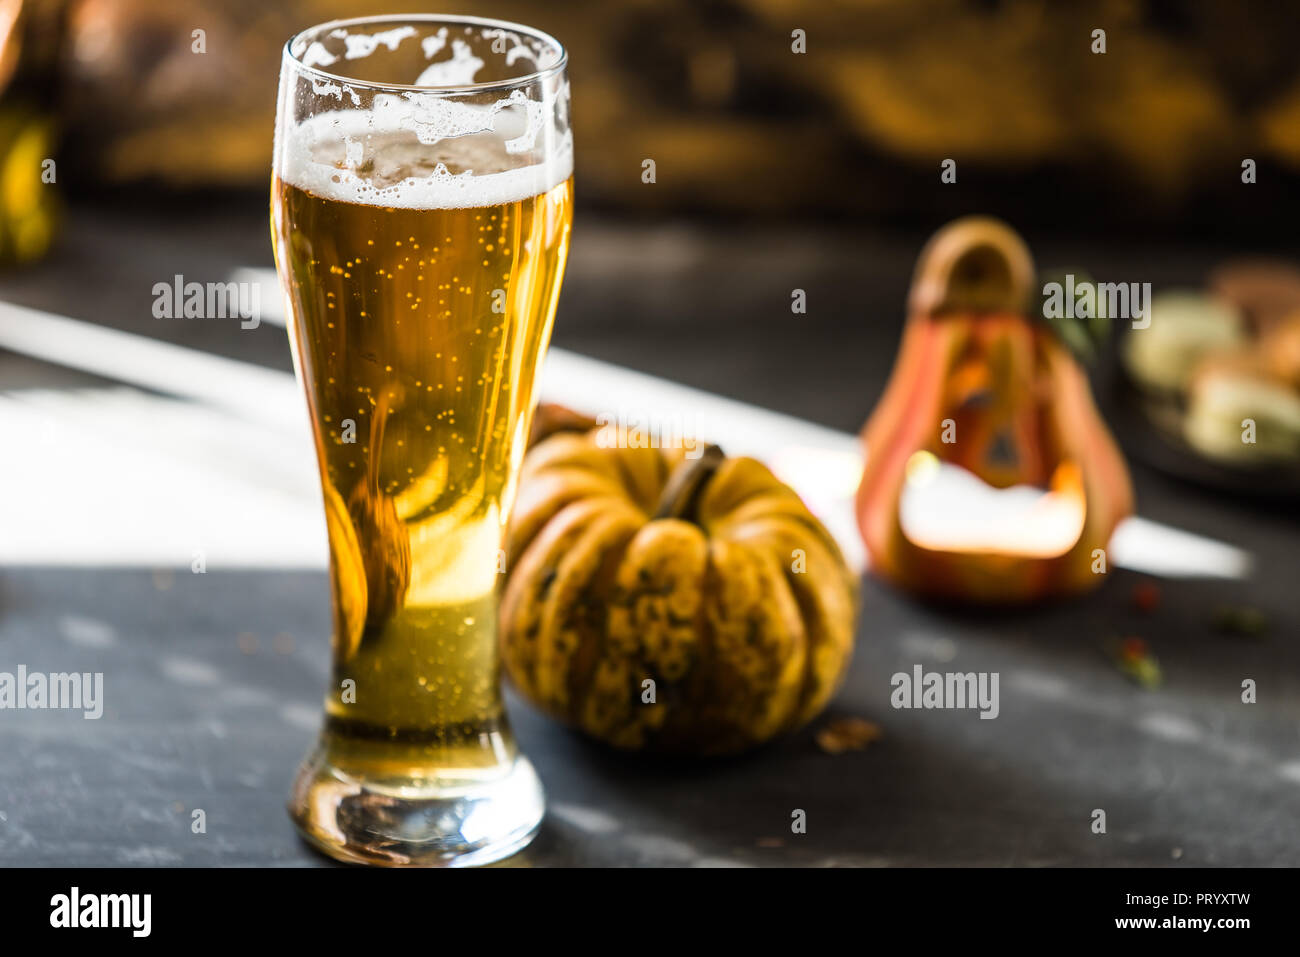 Glas goldenen Bier auf dunklen, hölzernen Tisch, bis Herbst Dekorationen umgeben Stockfoto